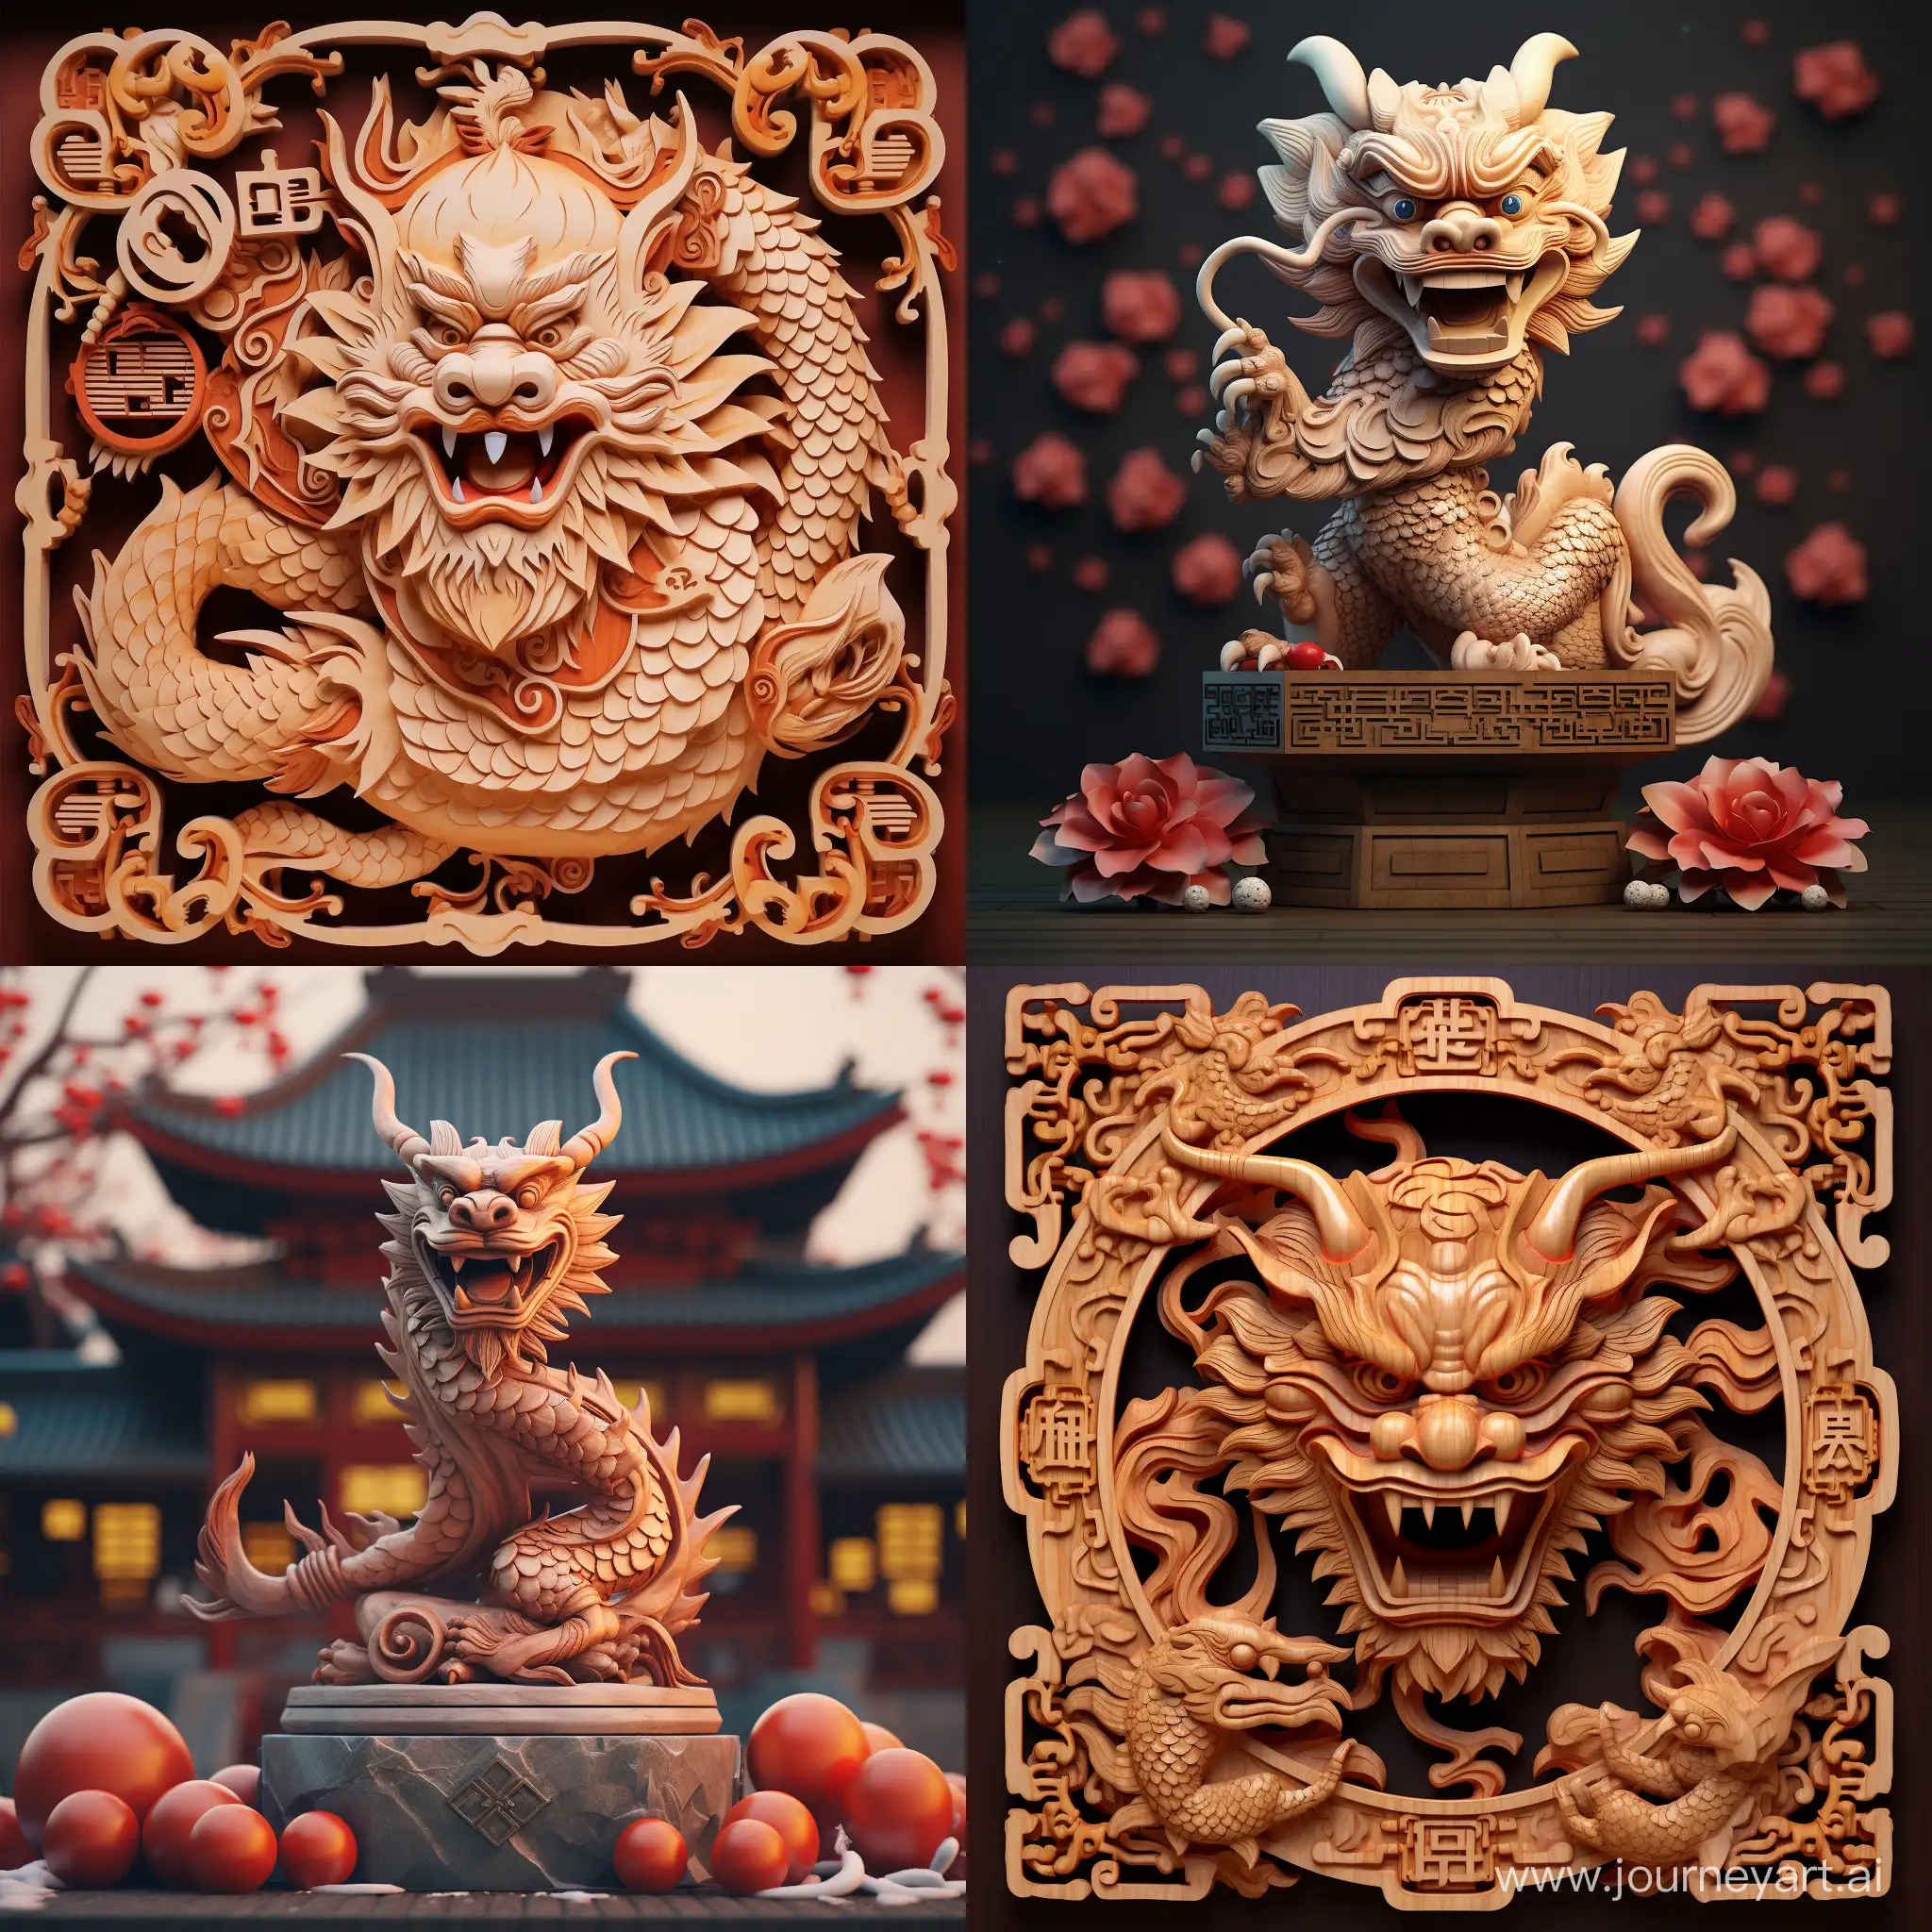 Generuj PF přání do Nového roku s motivem čínského dřevěného draka, symbolu nového čínského roku. Chci, aby bylo přání plné optimismu, štěstí a úspěchů. Zahrň, prosím, do obrázku podmanivý obraz dřevěného draka a něco, co symbolizuje radostný začátek nového roku. Děkuji!